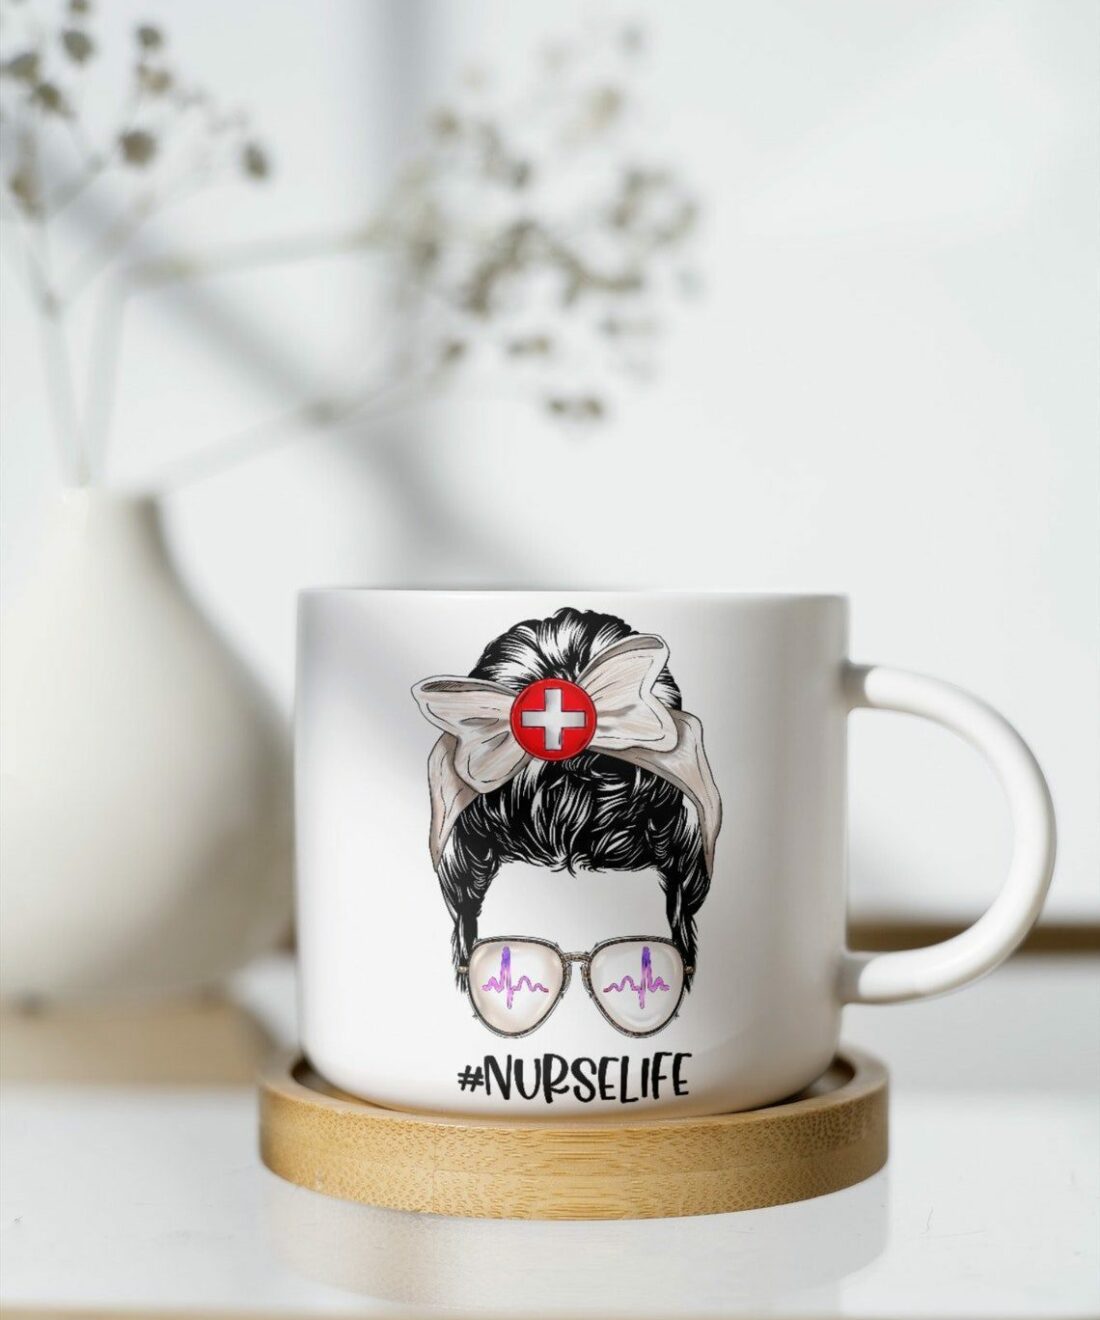 Nurse life| adorable gift mug for your girlfriend or sister - 11oz